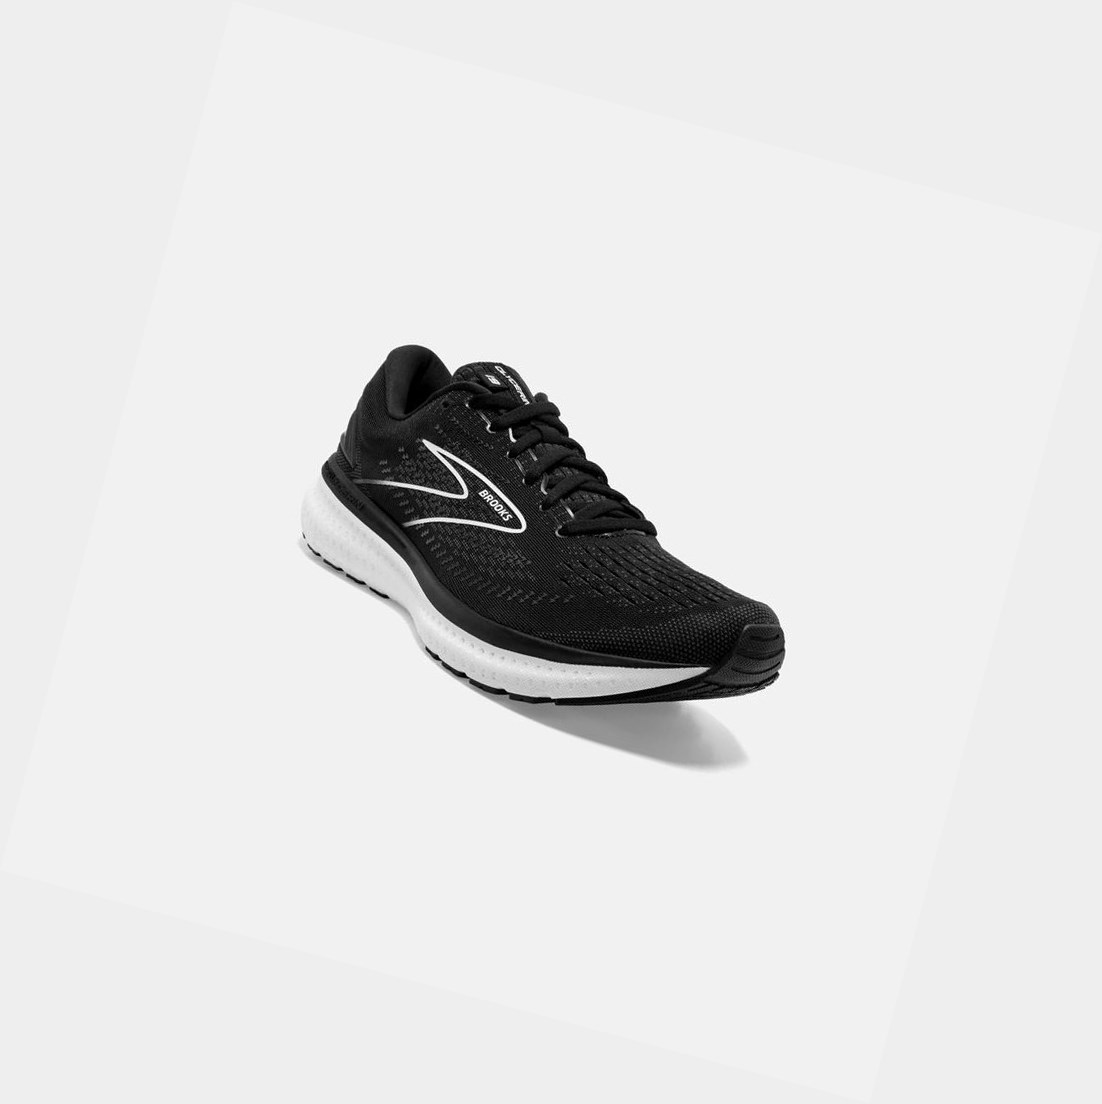 Brooks Glycerin 19 Women's Road Running Shoes Black / White | PEVK-03159